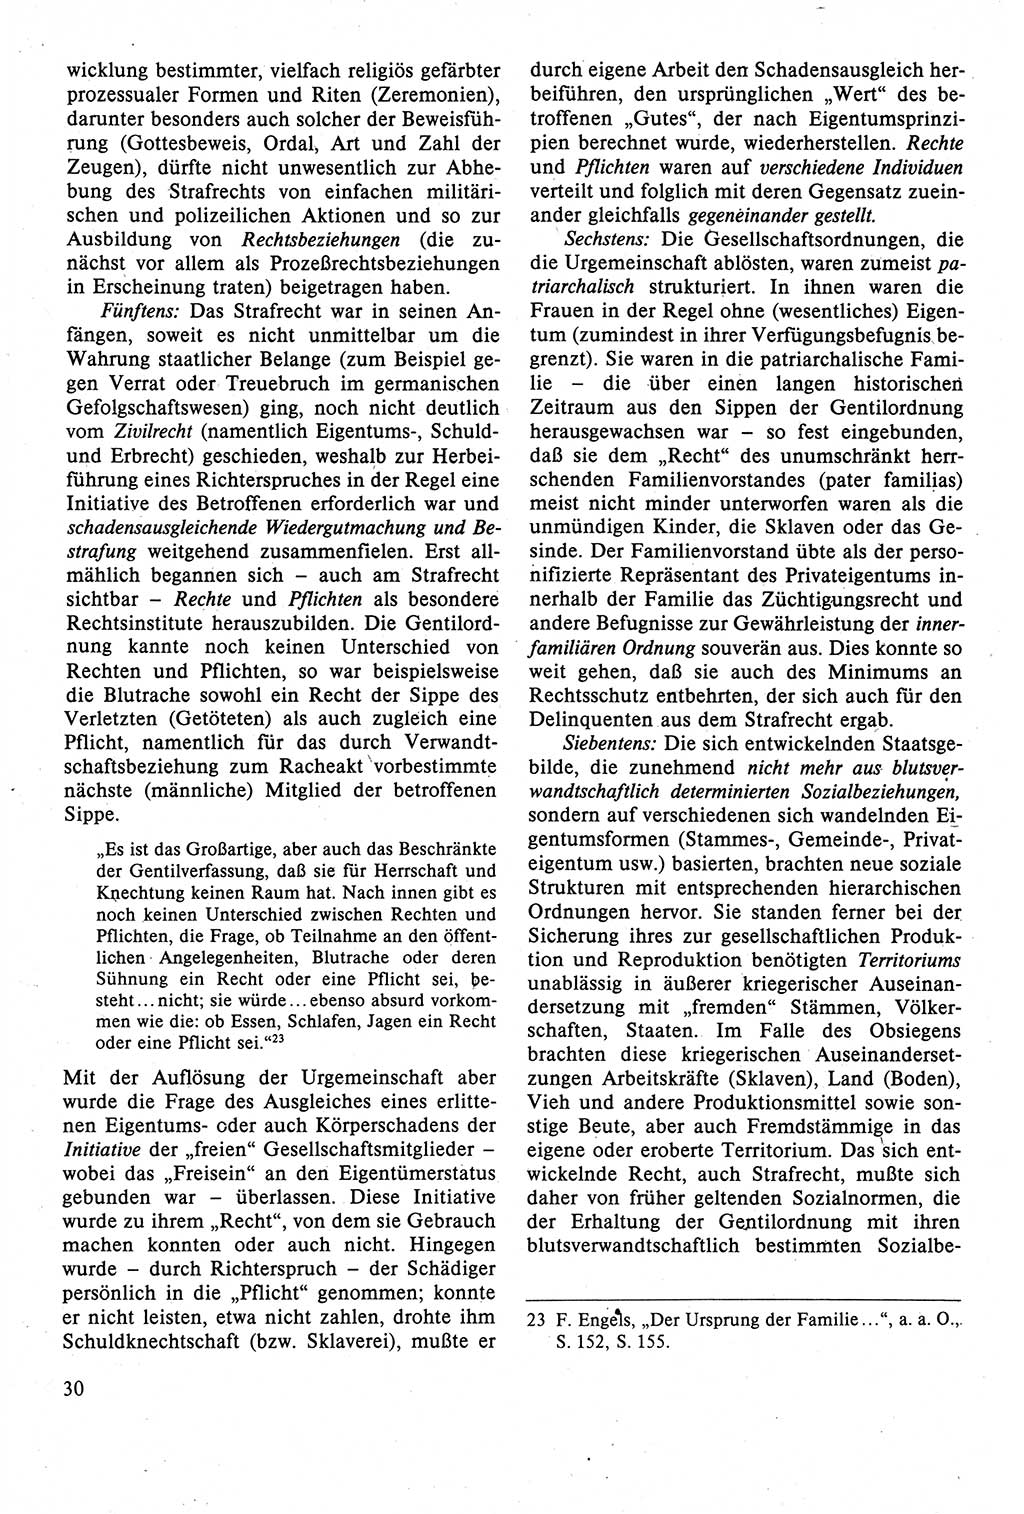 Strafrecht der DDR (Deutsche Demokratische Republik), Lehrbuch 1988, Seite 30 (Strafr. DDR Lb. 1988, S. 30)